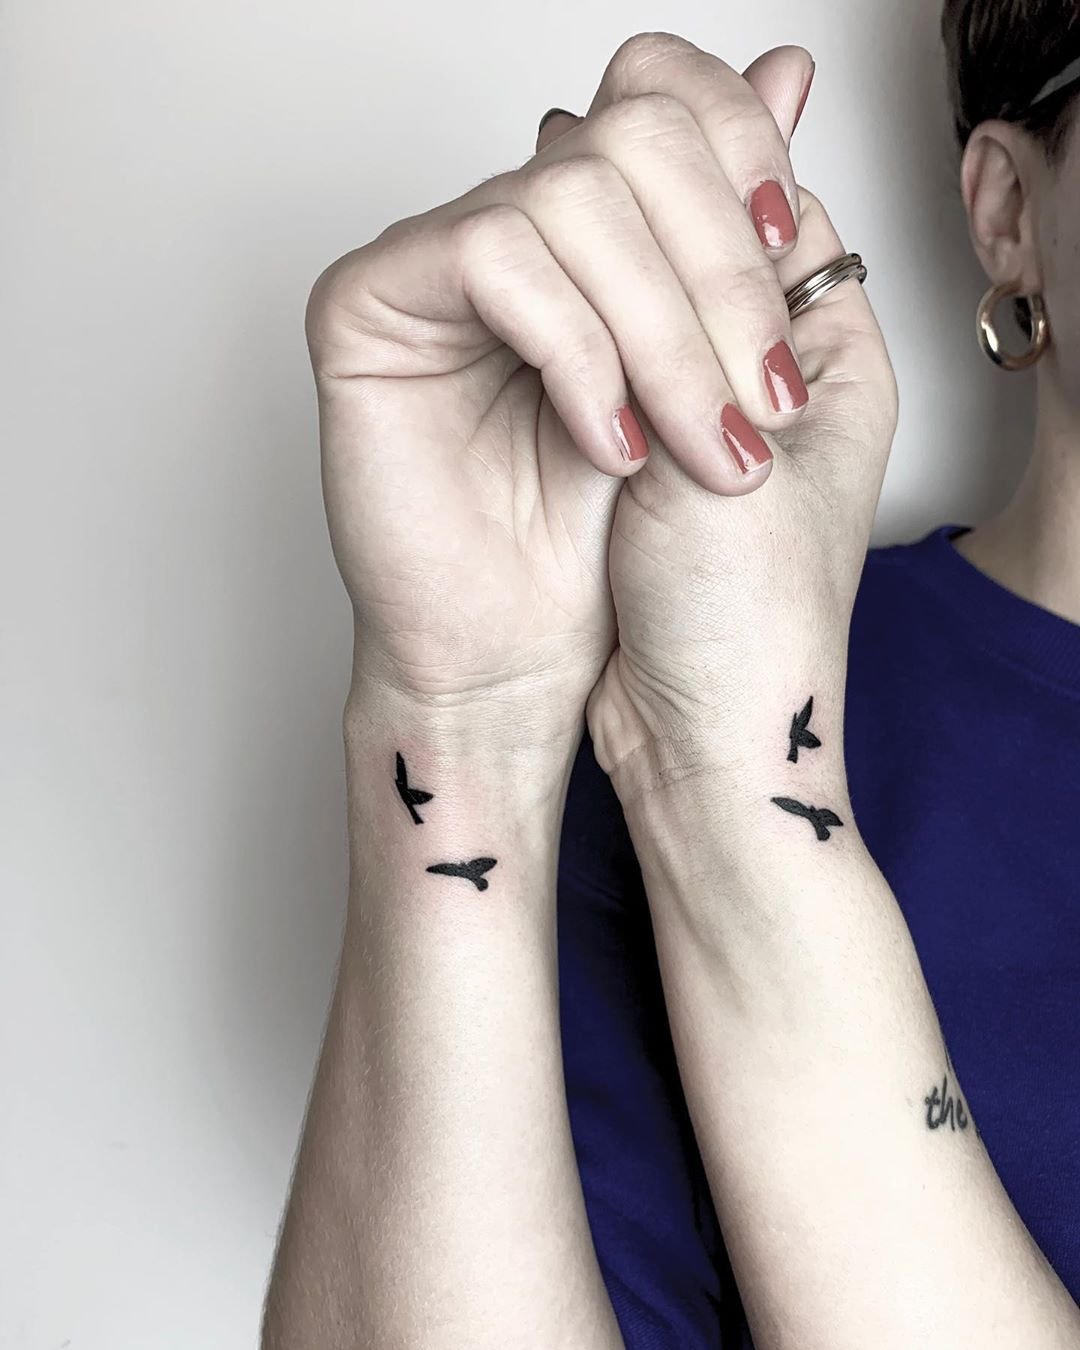 Татуировка птицы на кистях, запястьях и пальцах